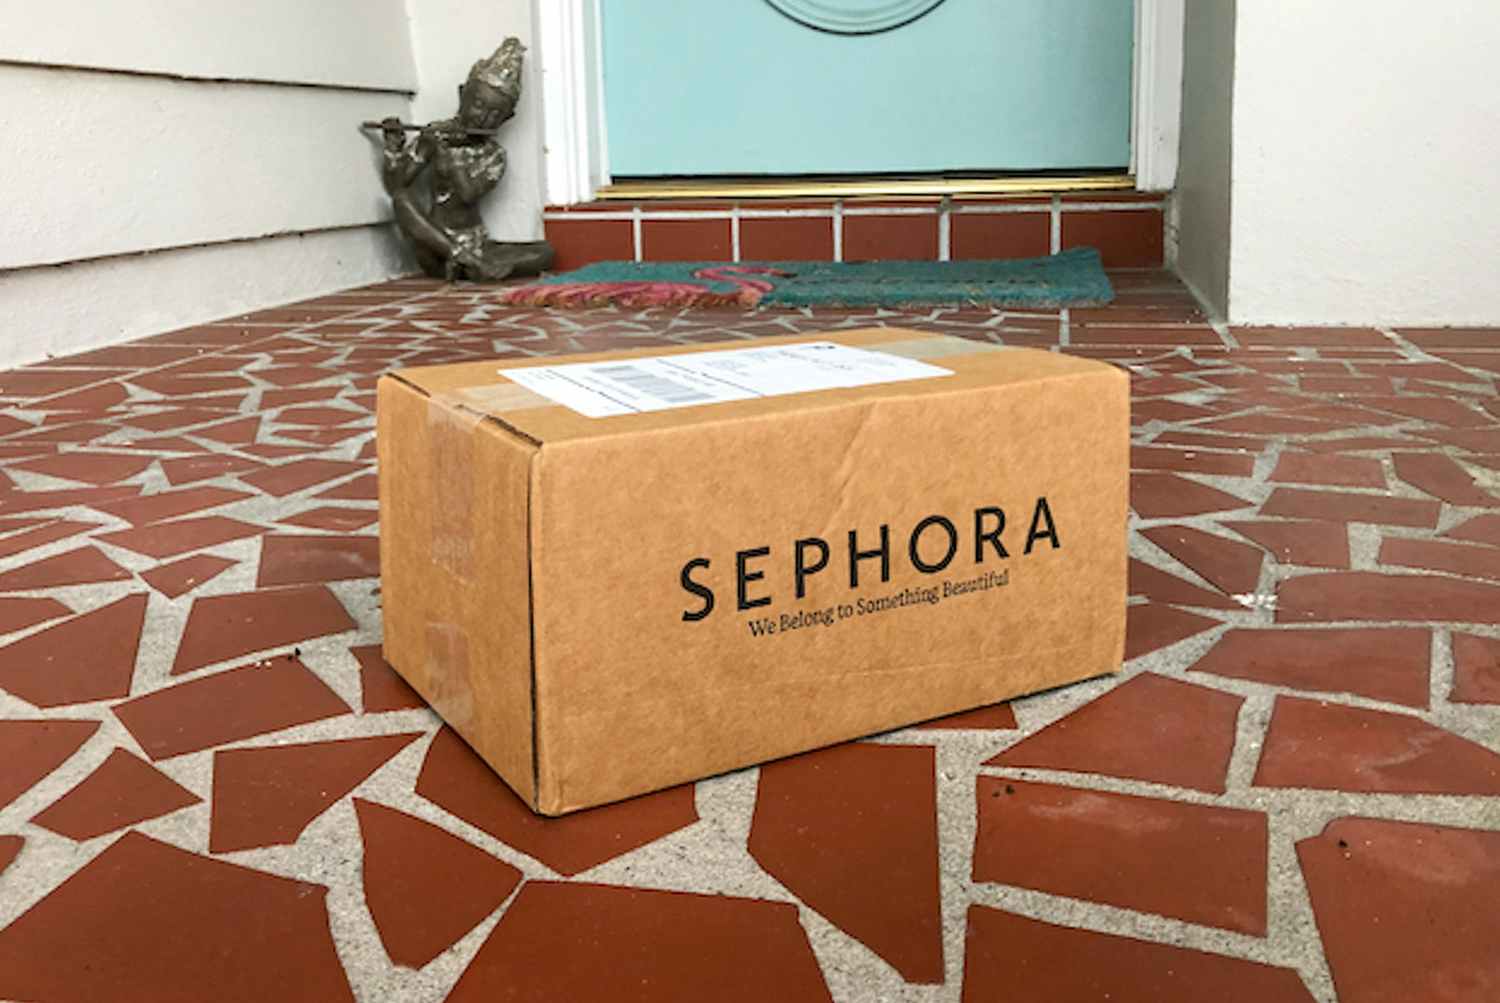 sephora shipping box on porch